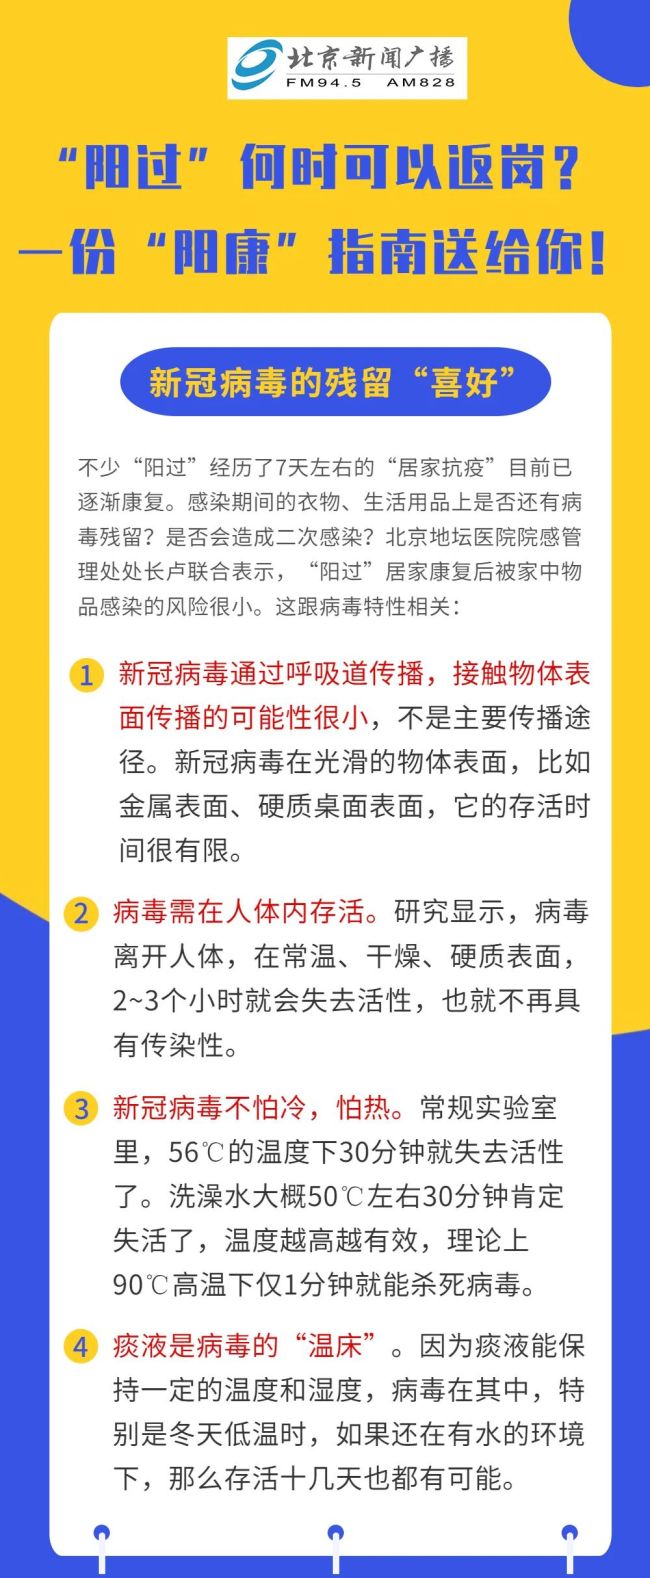 吉林省委书记:在疫情防控中失职渎职的 要严肃问责 - Grandfinity - Baidu 百度热点快讯